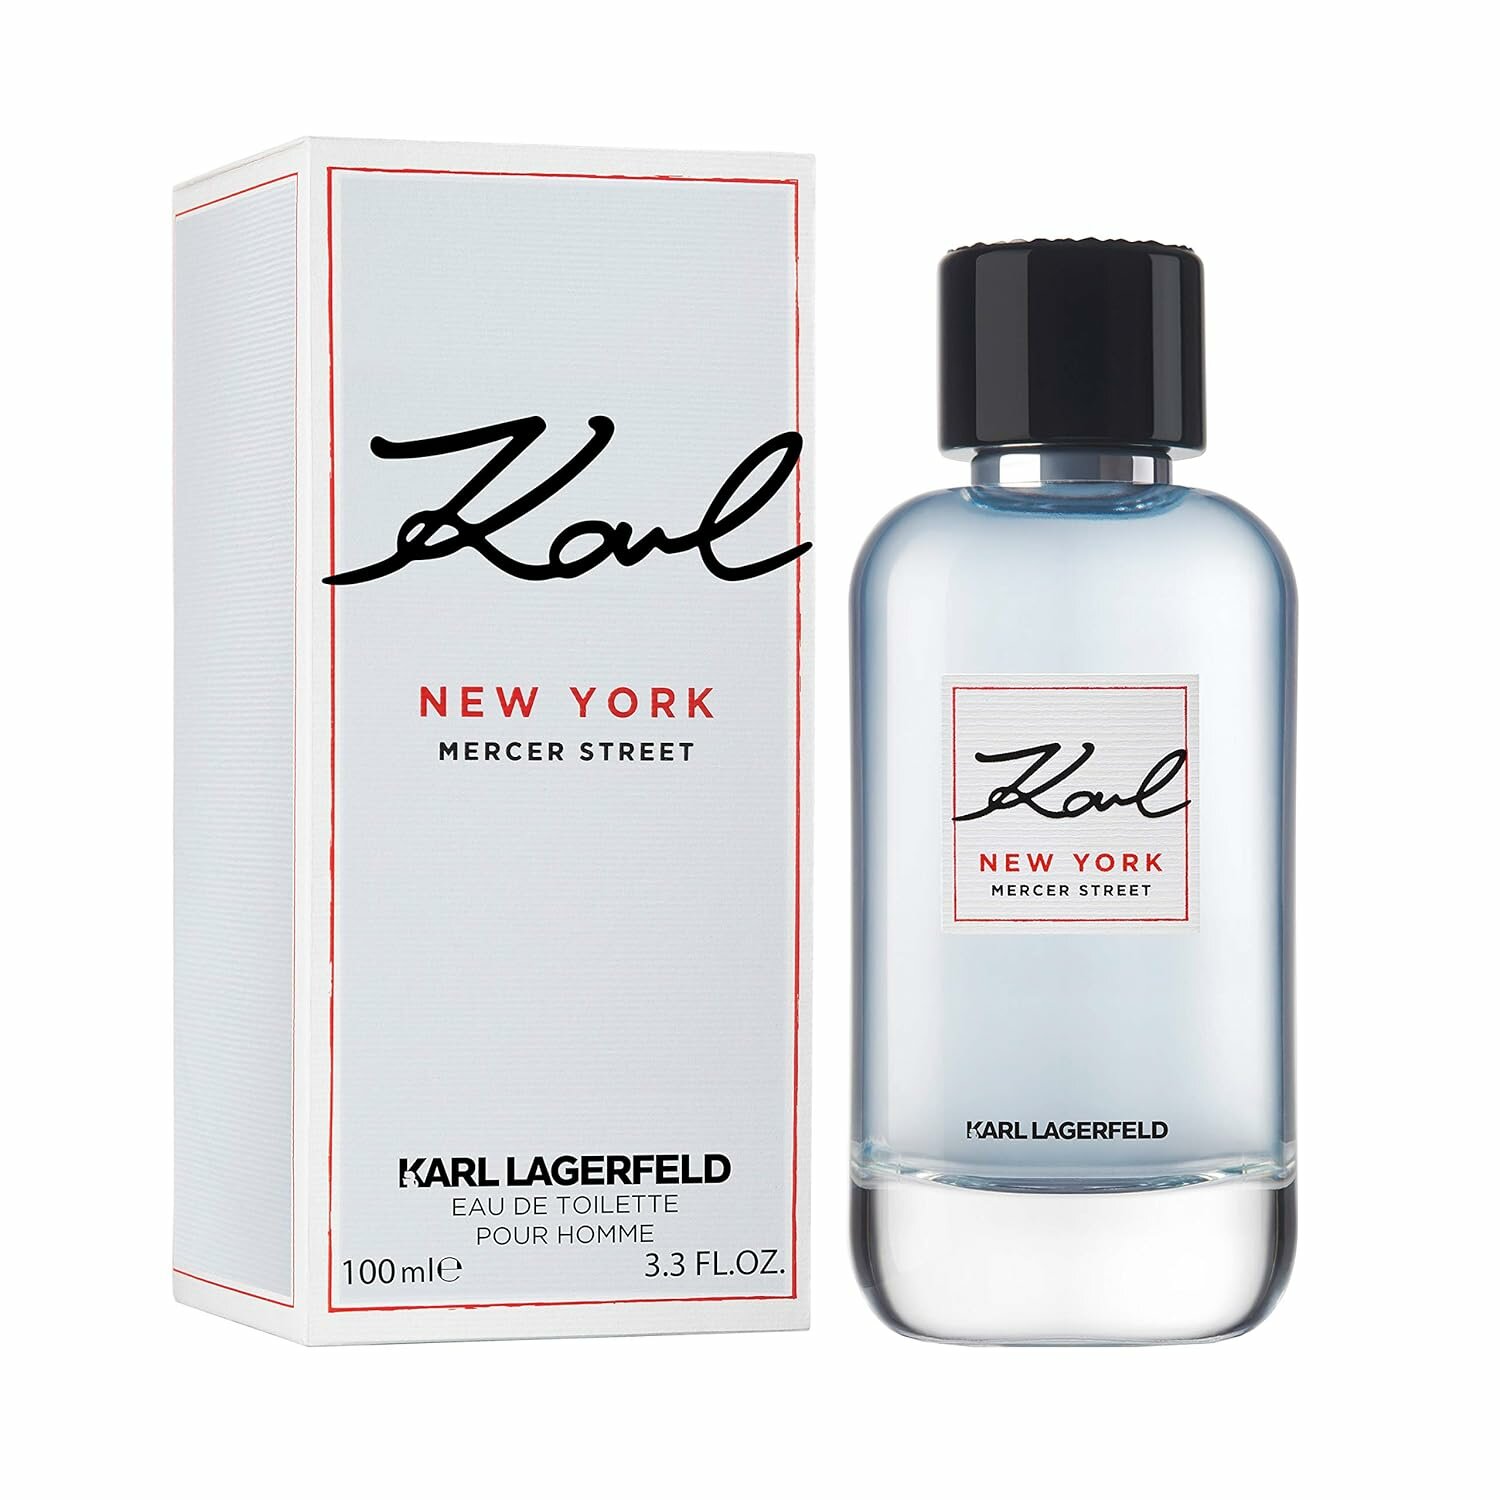 Karl Lagerfeld туалетная вода New York Mercer Street, 100 мл, 300 г